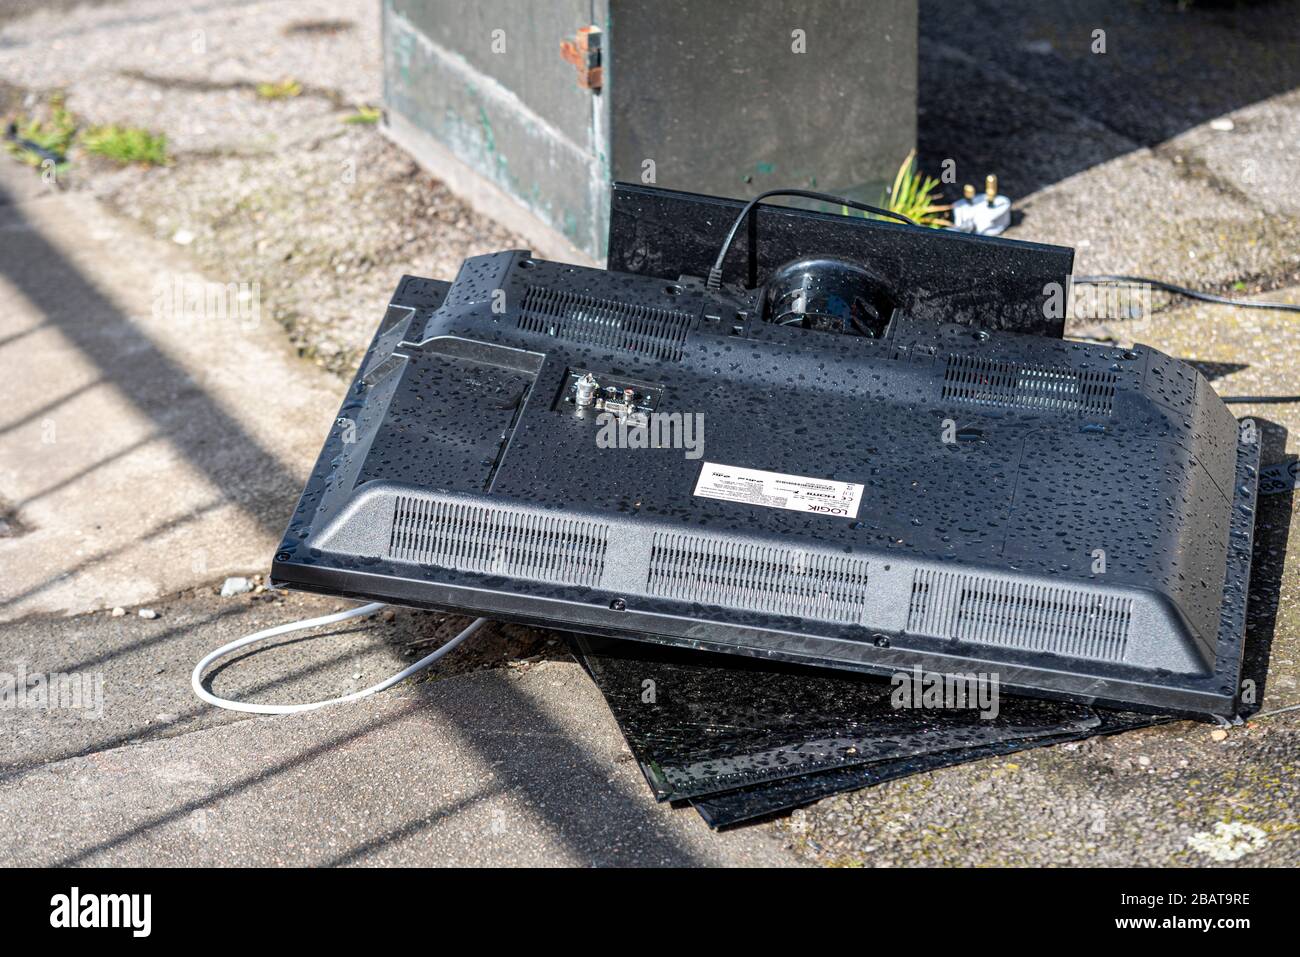 Ausrangierter Flachbildfernseher zerschlug sich auf einem Straßenpflaster. Elektroschrott wird im Regen ins Freie entsorgt. Logik TV mit angeschlossenem Stecker Stockfoto